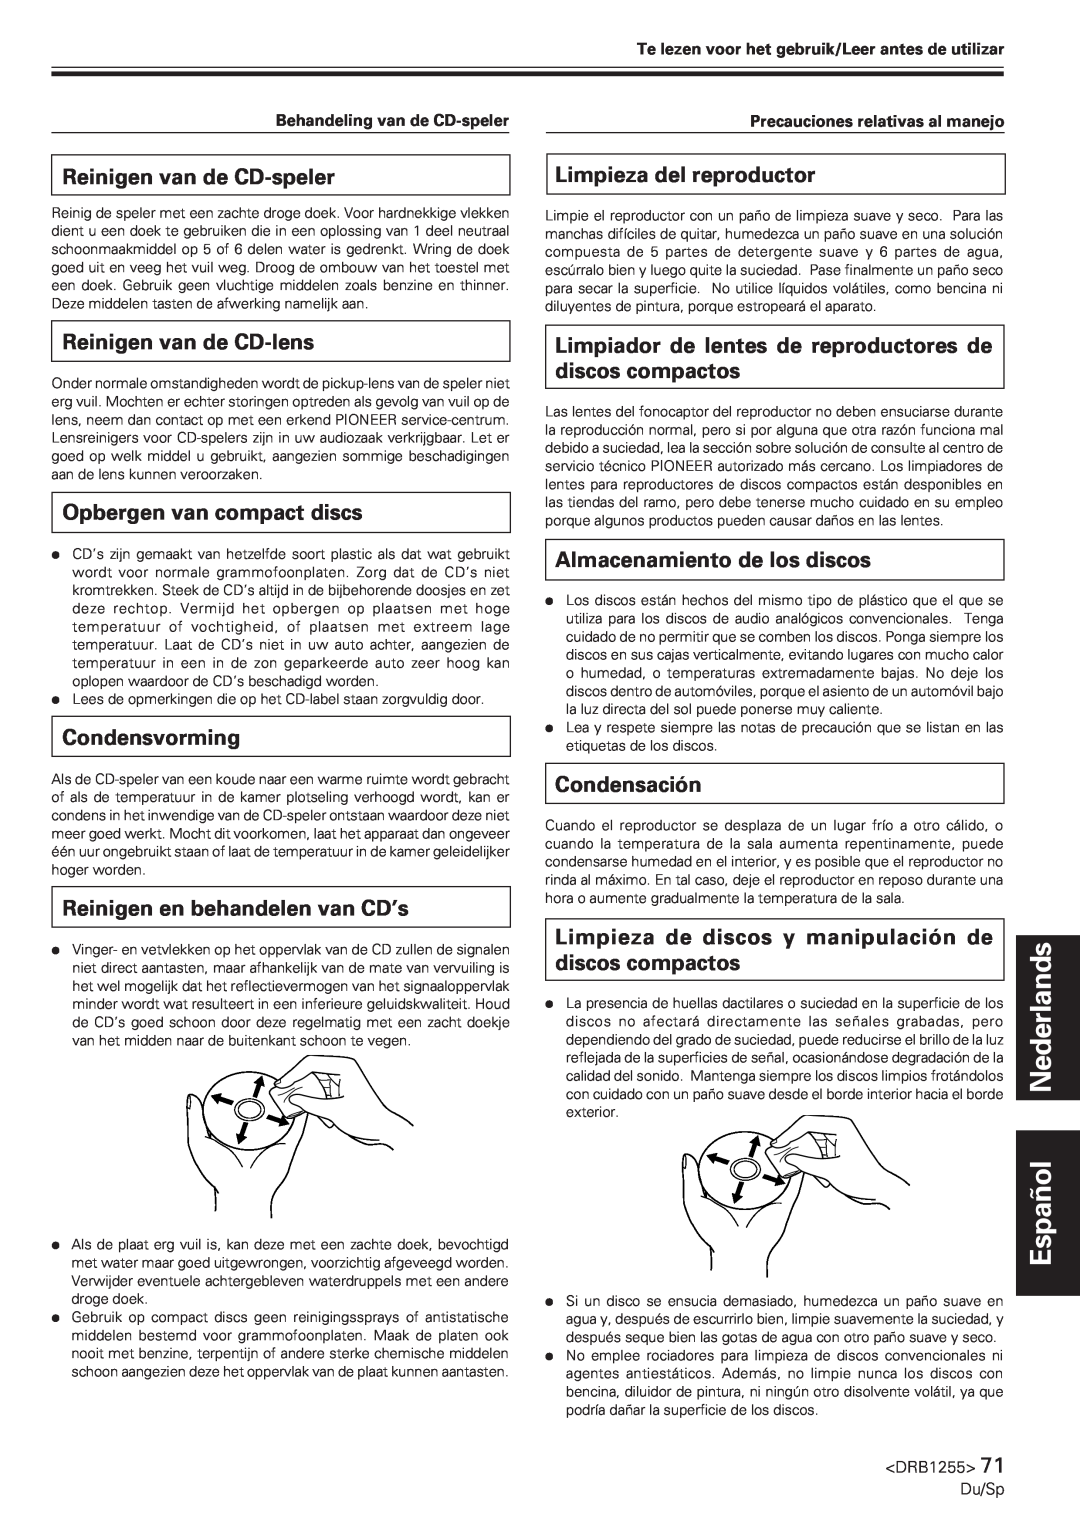 Pioneer CMX-5000 manual Español Nederlands, Reinigen van de CD-speler, Limpieza del reproductor, Reinigen van de CD-lens 